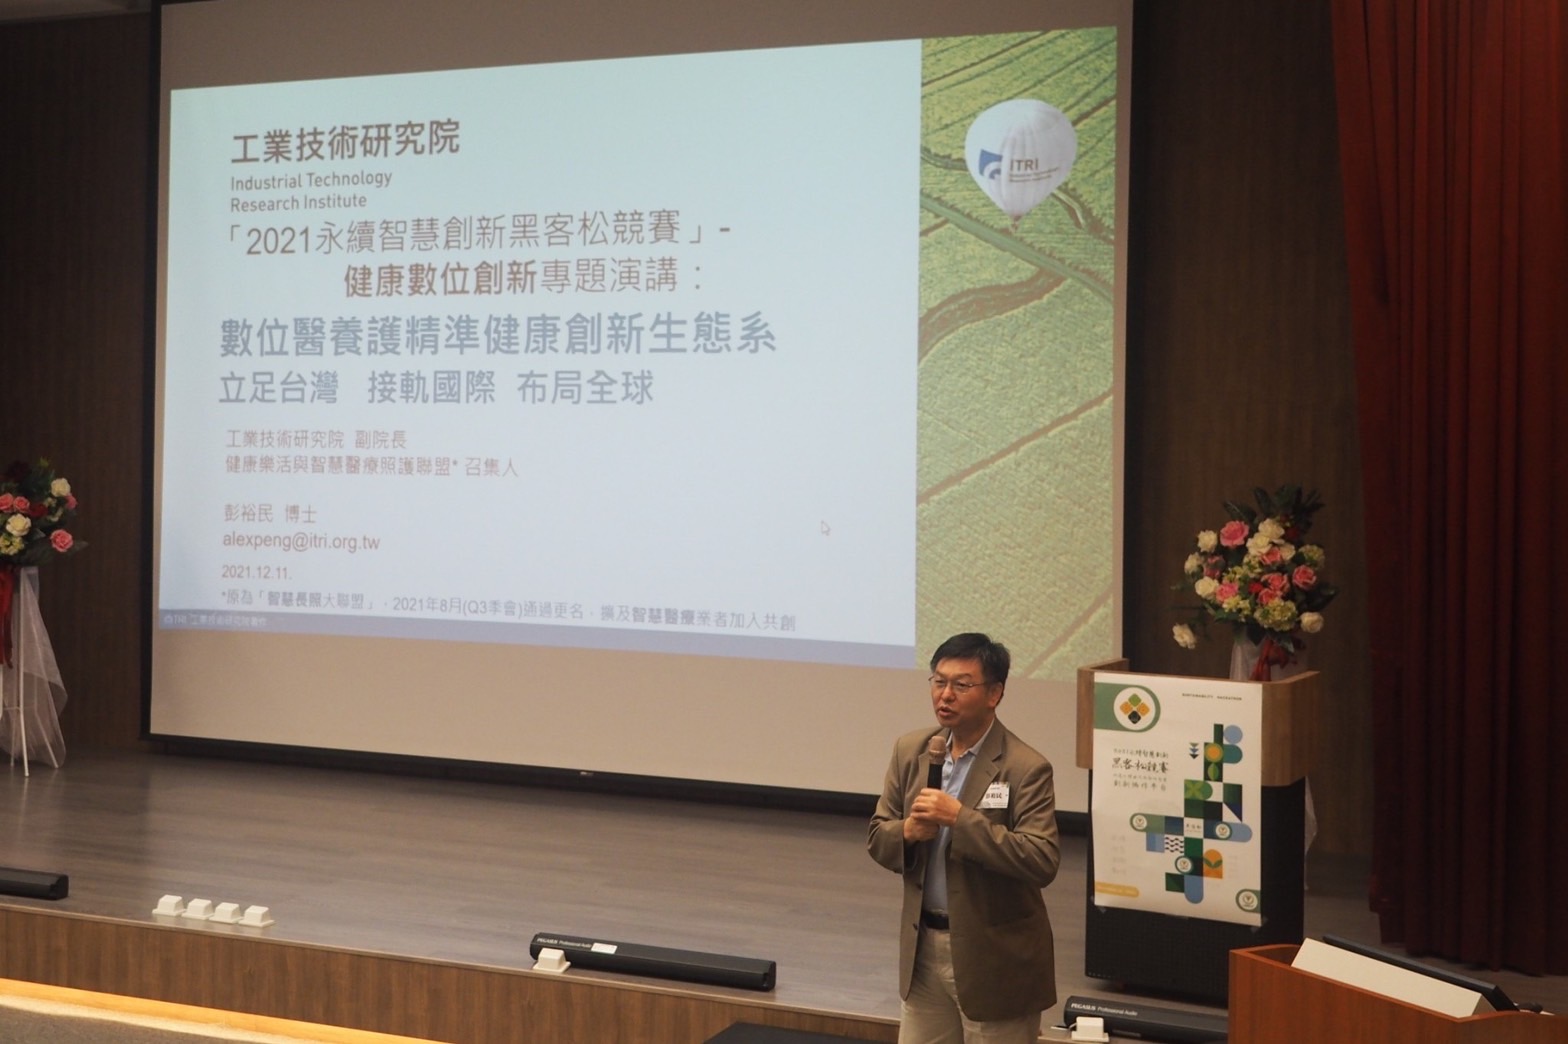 
	工業技術研究院副院長 彭裕民博士發表演講

	 
